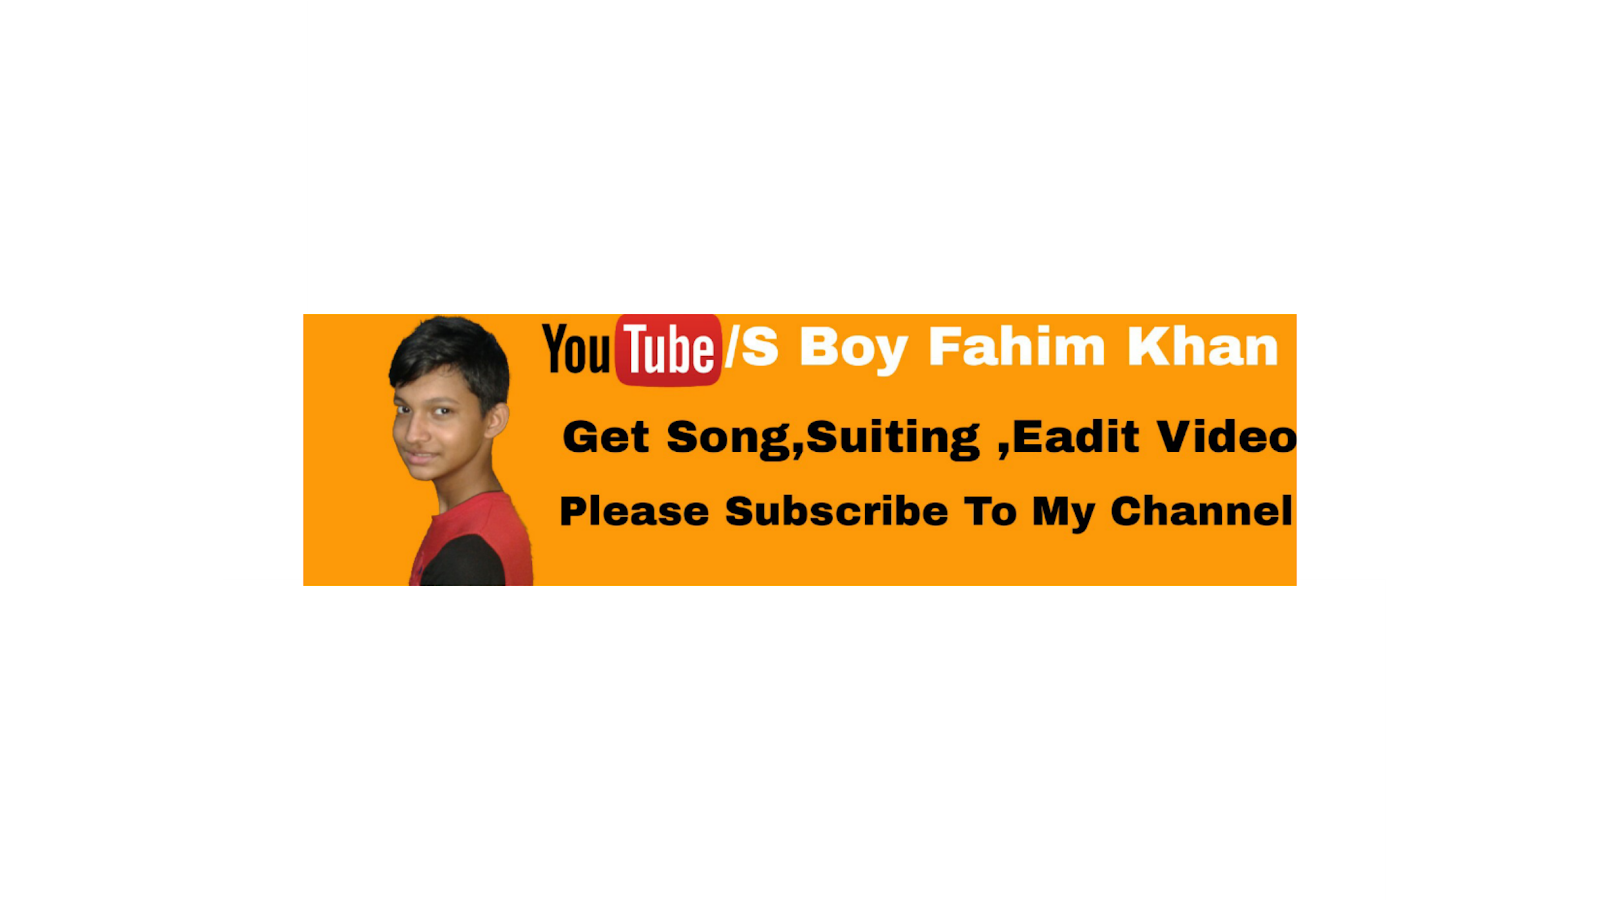 S Boy Fahim Khan